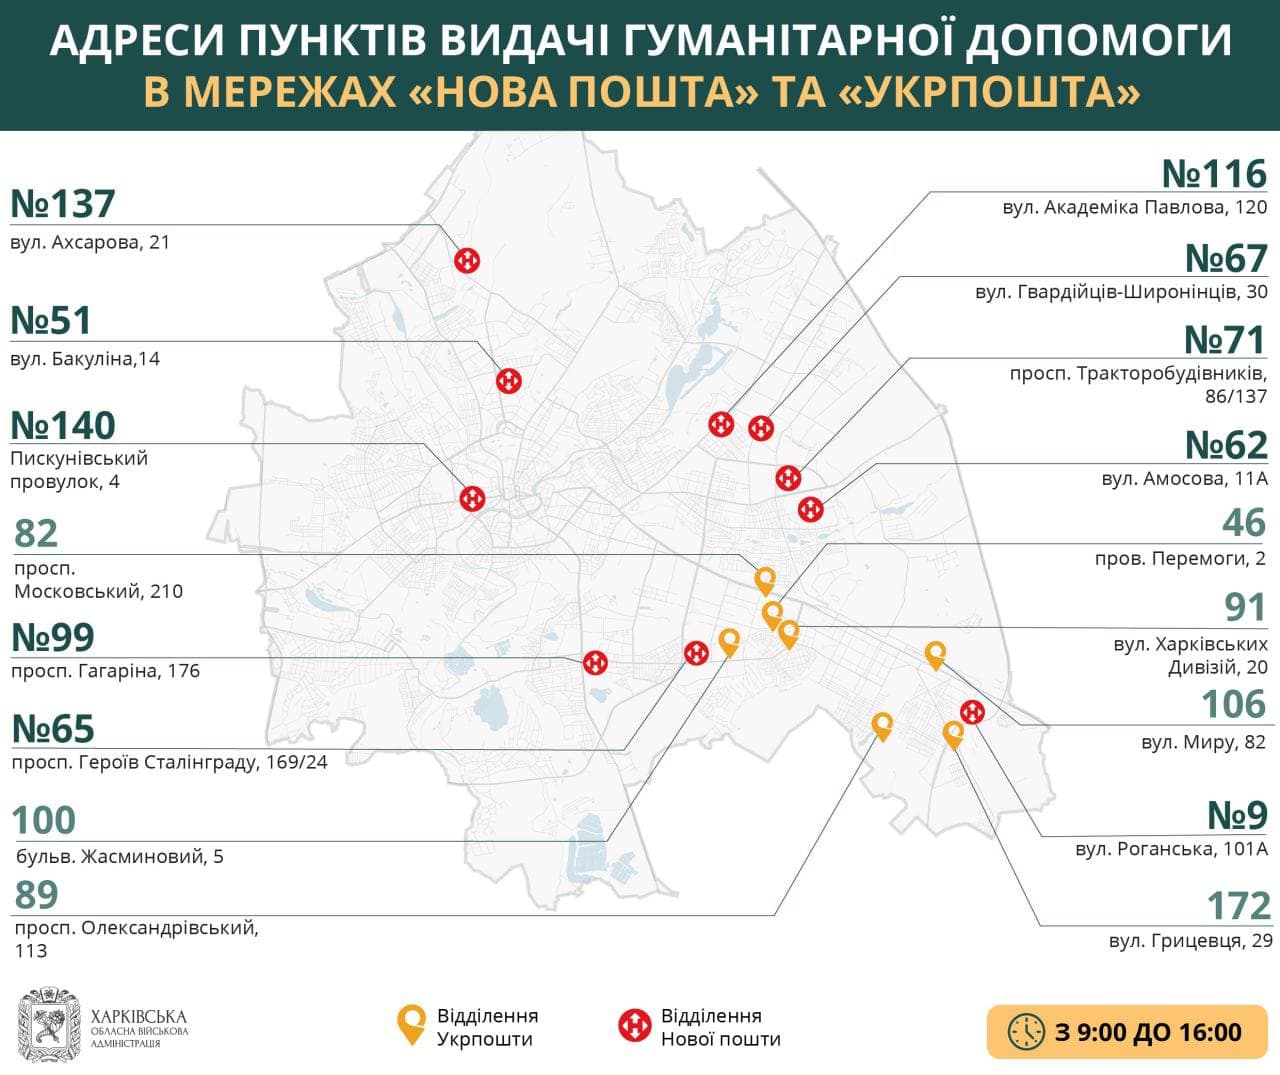 Где получить гуманитарную помощь в Харькове 21 мая (адреса)